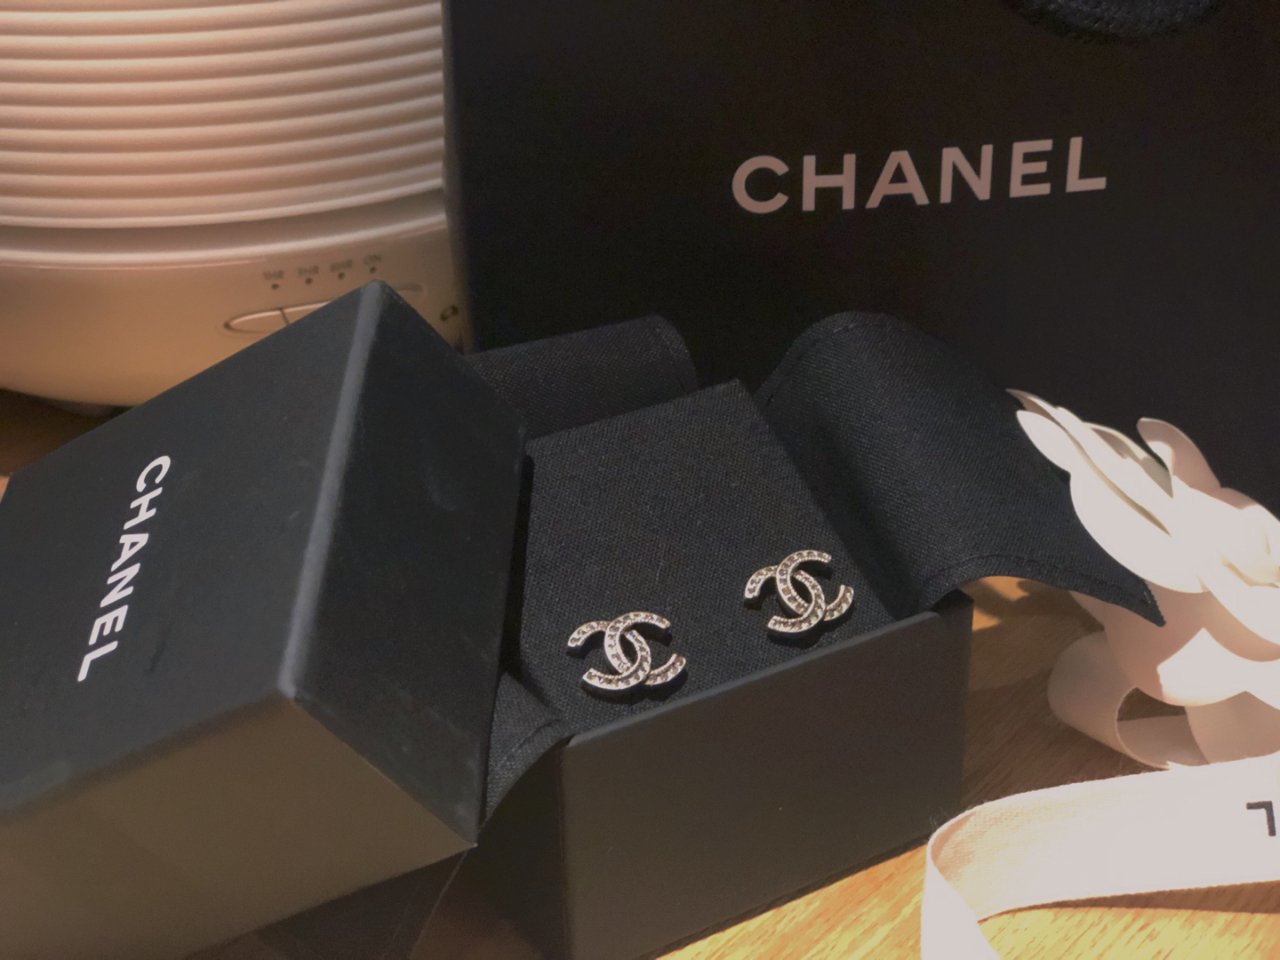 Chanel 香奈儿,chanel earring